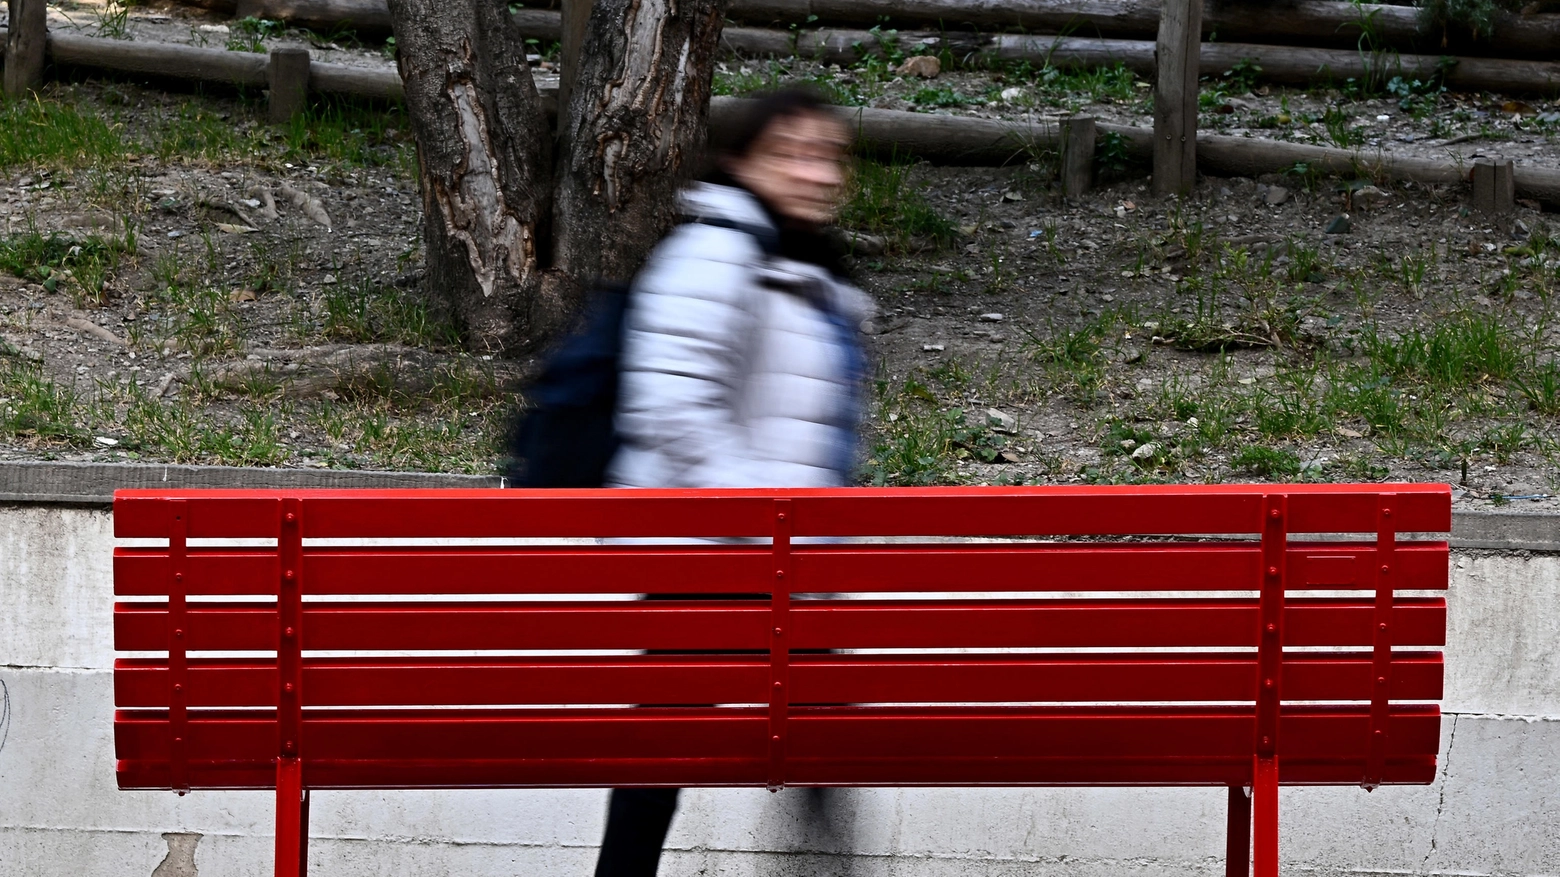 Panchina rossa, simbolo contro la violenza sulle donne (Foto Ansa)